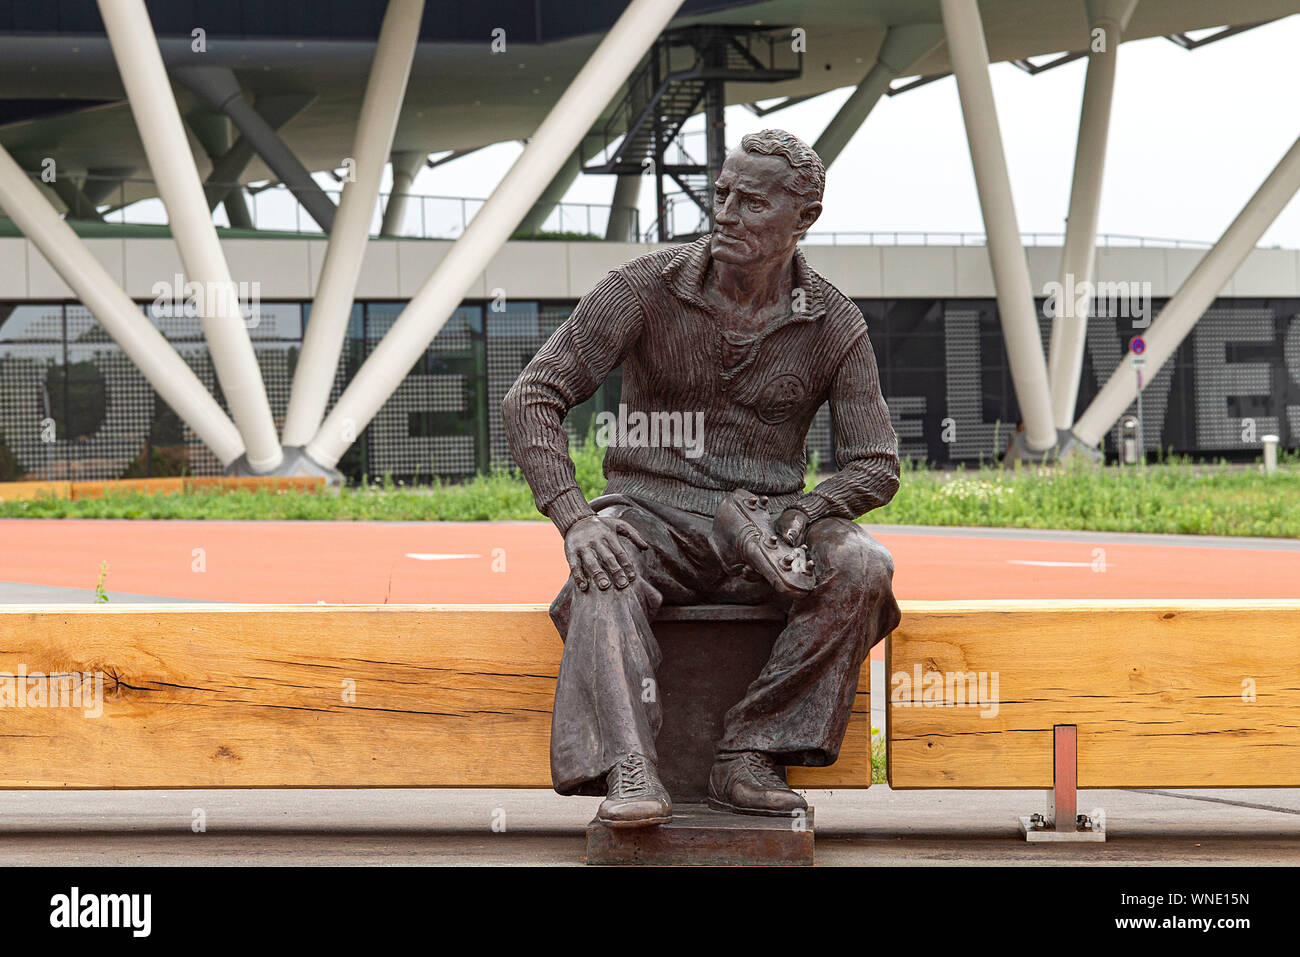 Statua, monumento del fondatore dell'azienda (fondatore) Adi Dassler  davanti all'arena; Adidas Arena, l'edificio amministrativo dell'Adidas AG,  reminiscenza di un pallone da calcio arena, lo stadio di calcio, ha una  dimensione di 52.000